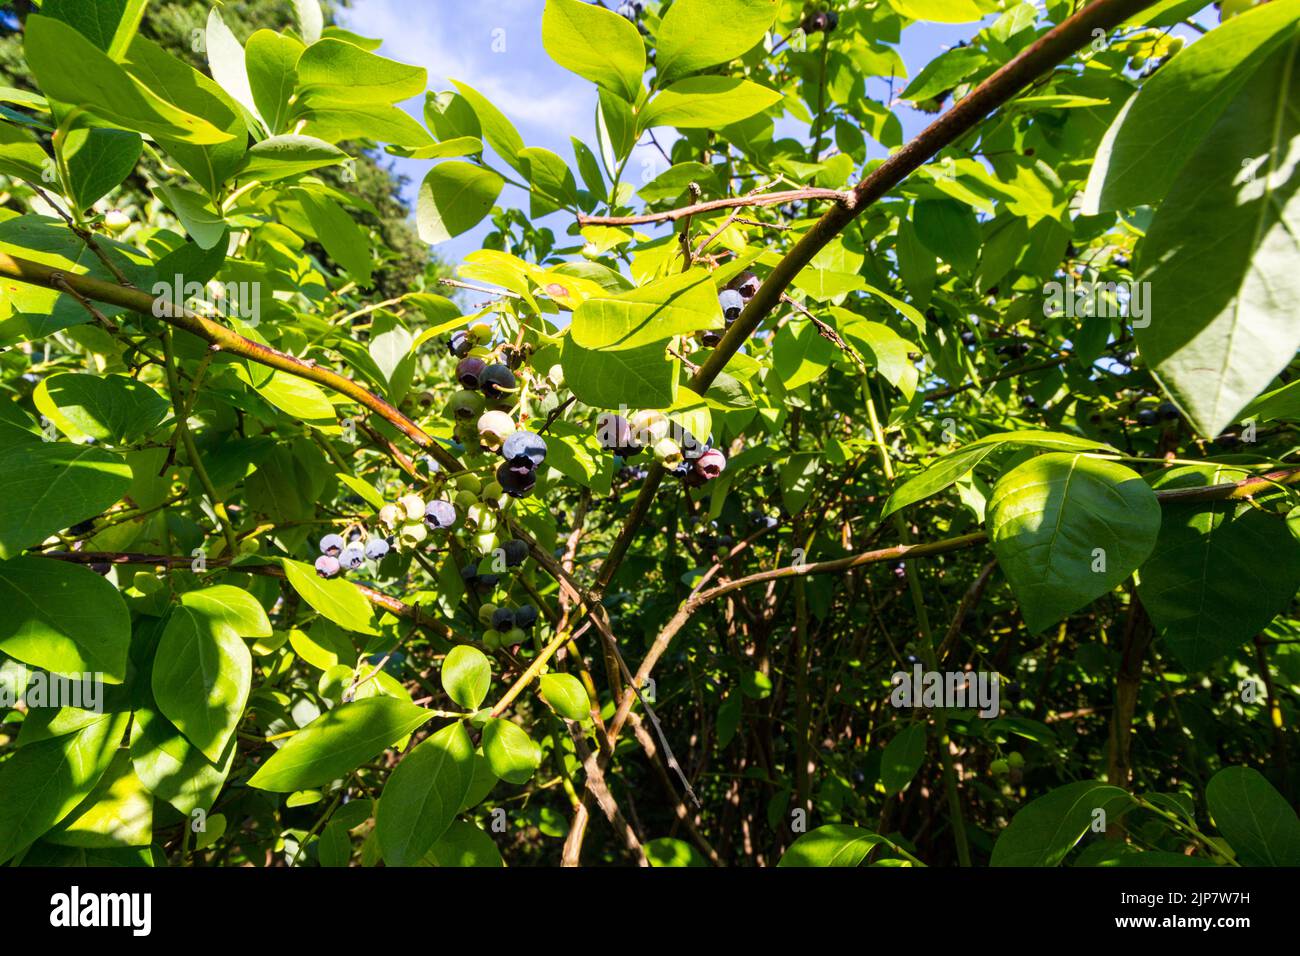 Northern highbush blueberry, Vaccinium corymbosum 'Bluecrop' grown in garden, Hungary, Europe Stock Photo